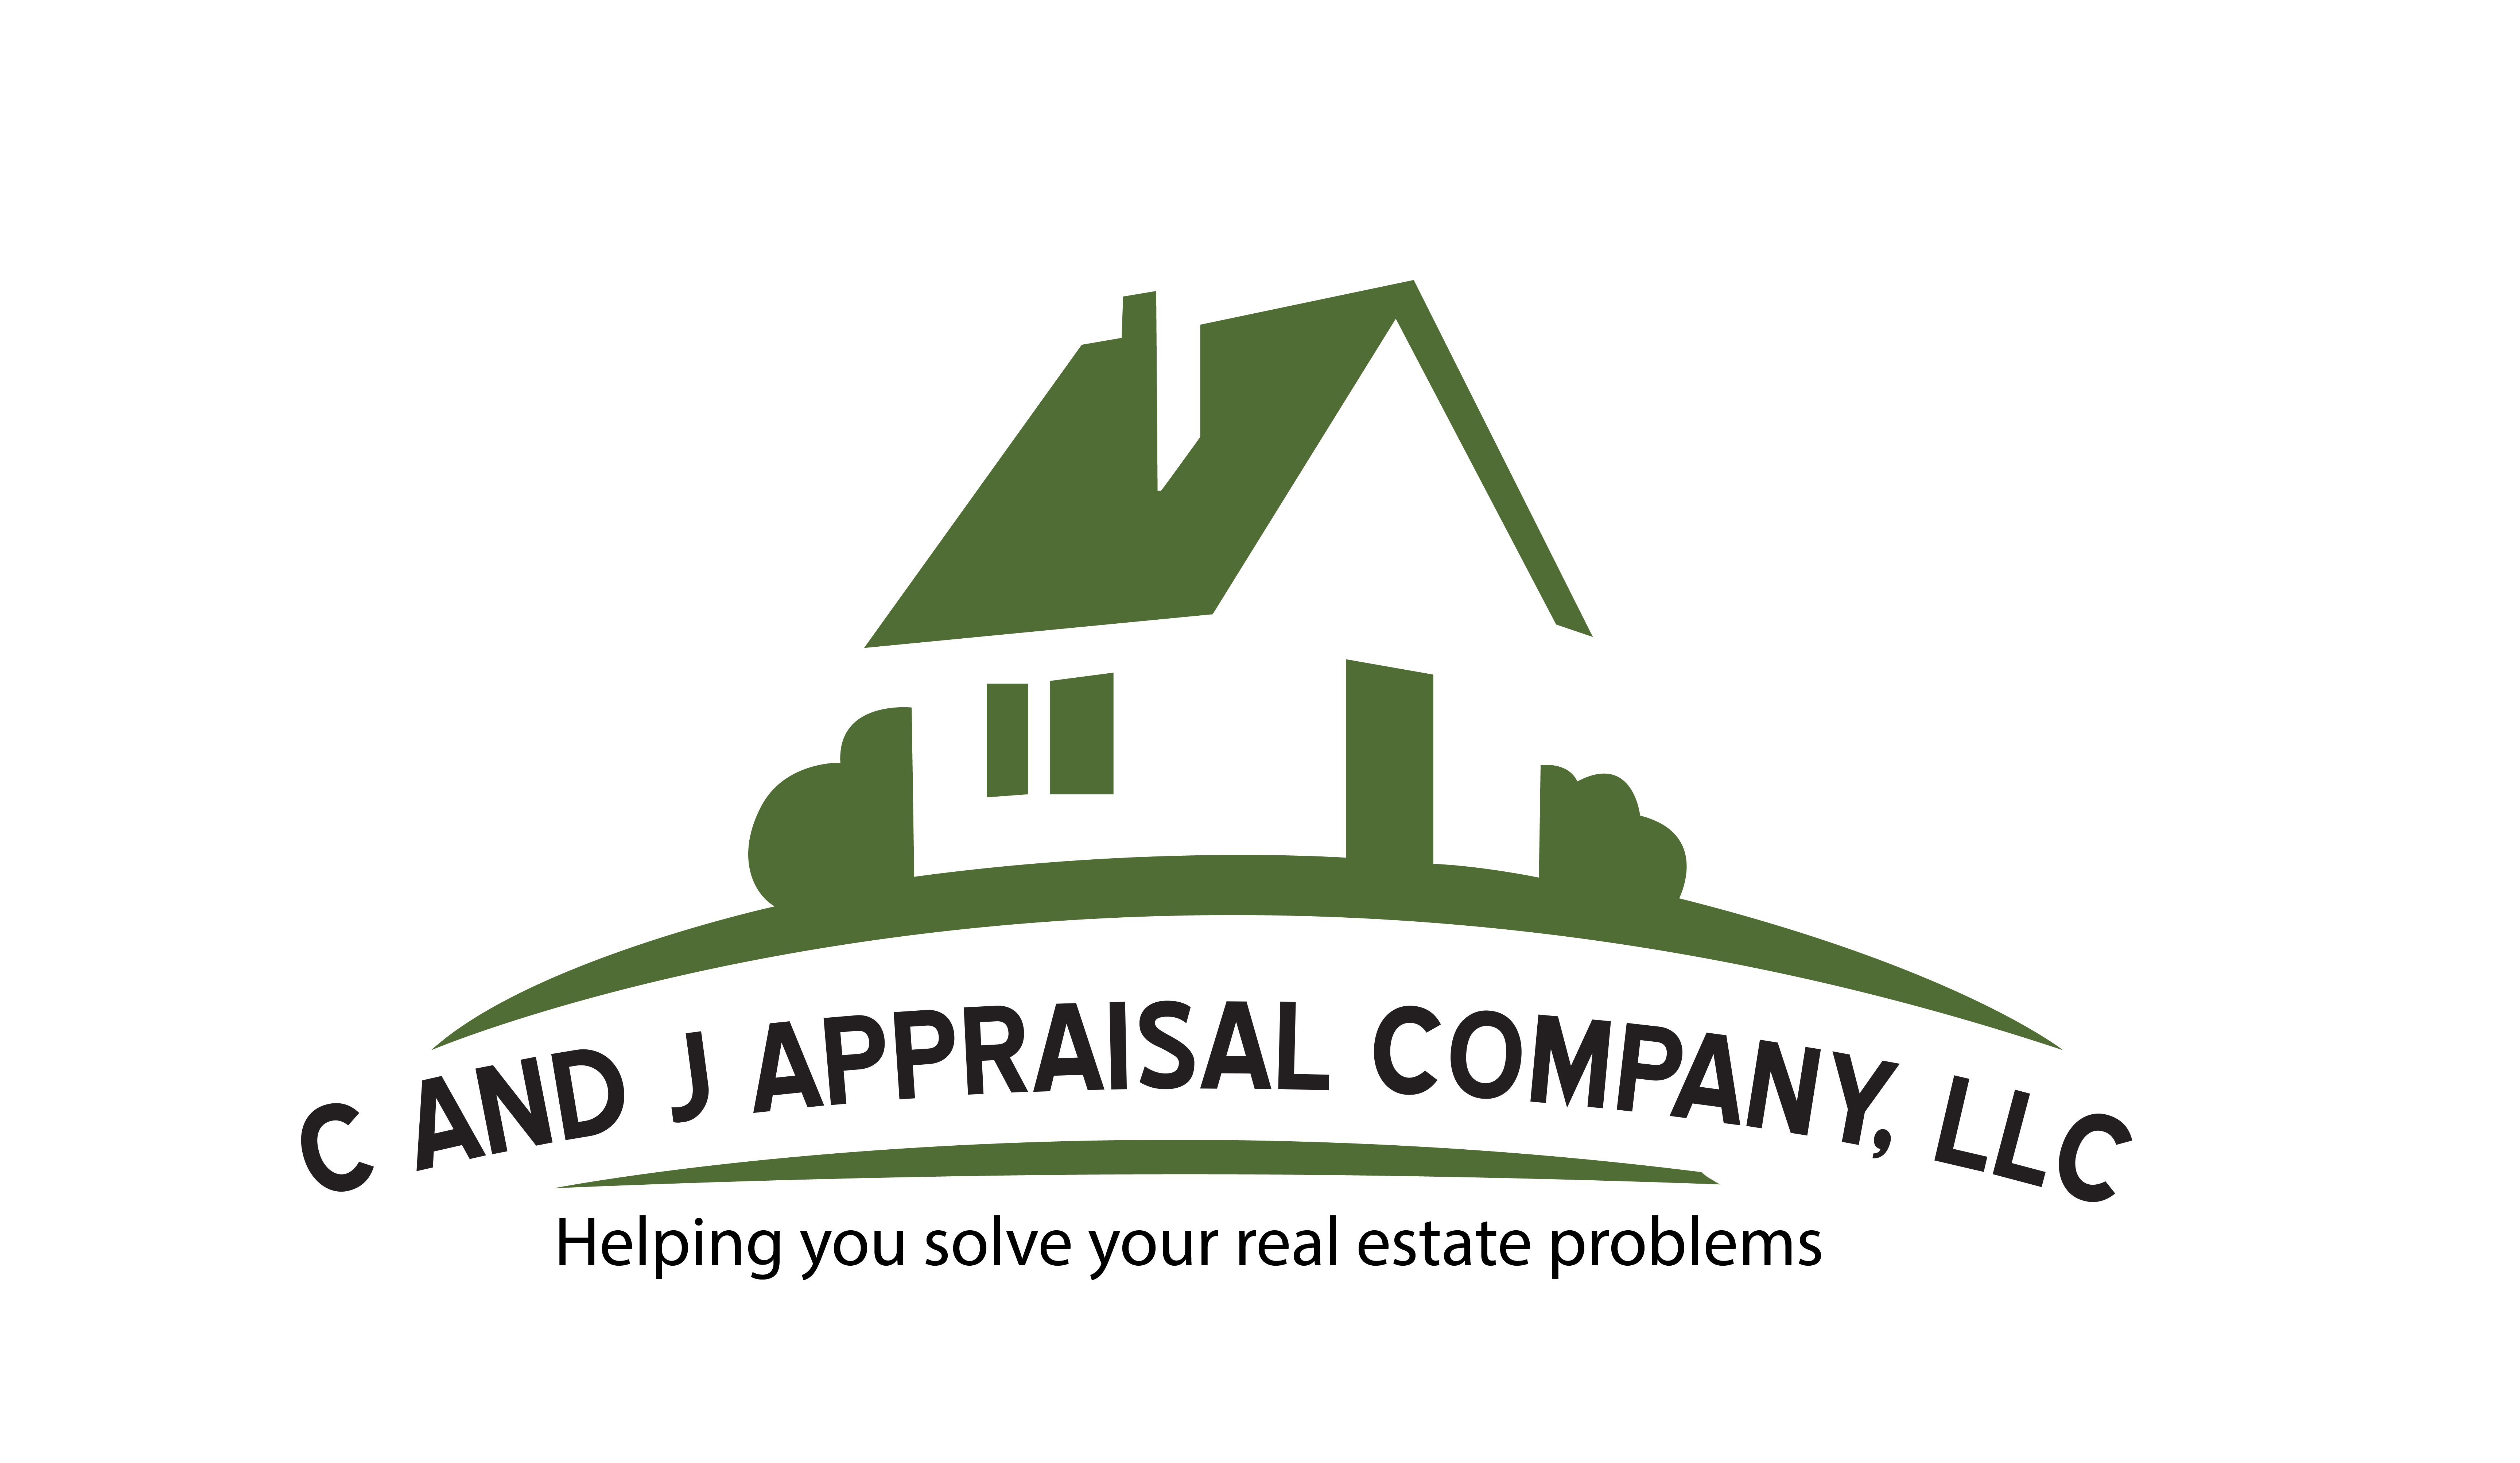 C and J Appraisal Company, L.L.C Logo